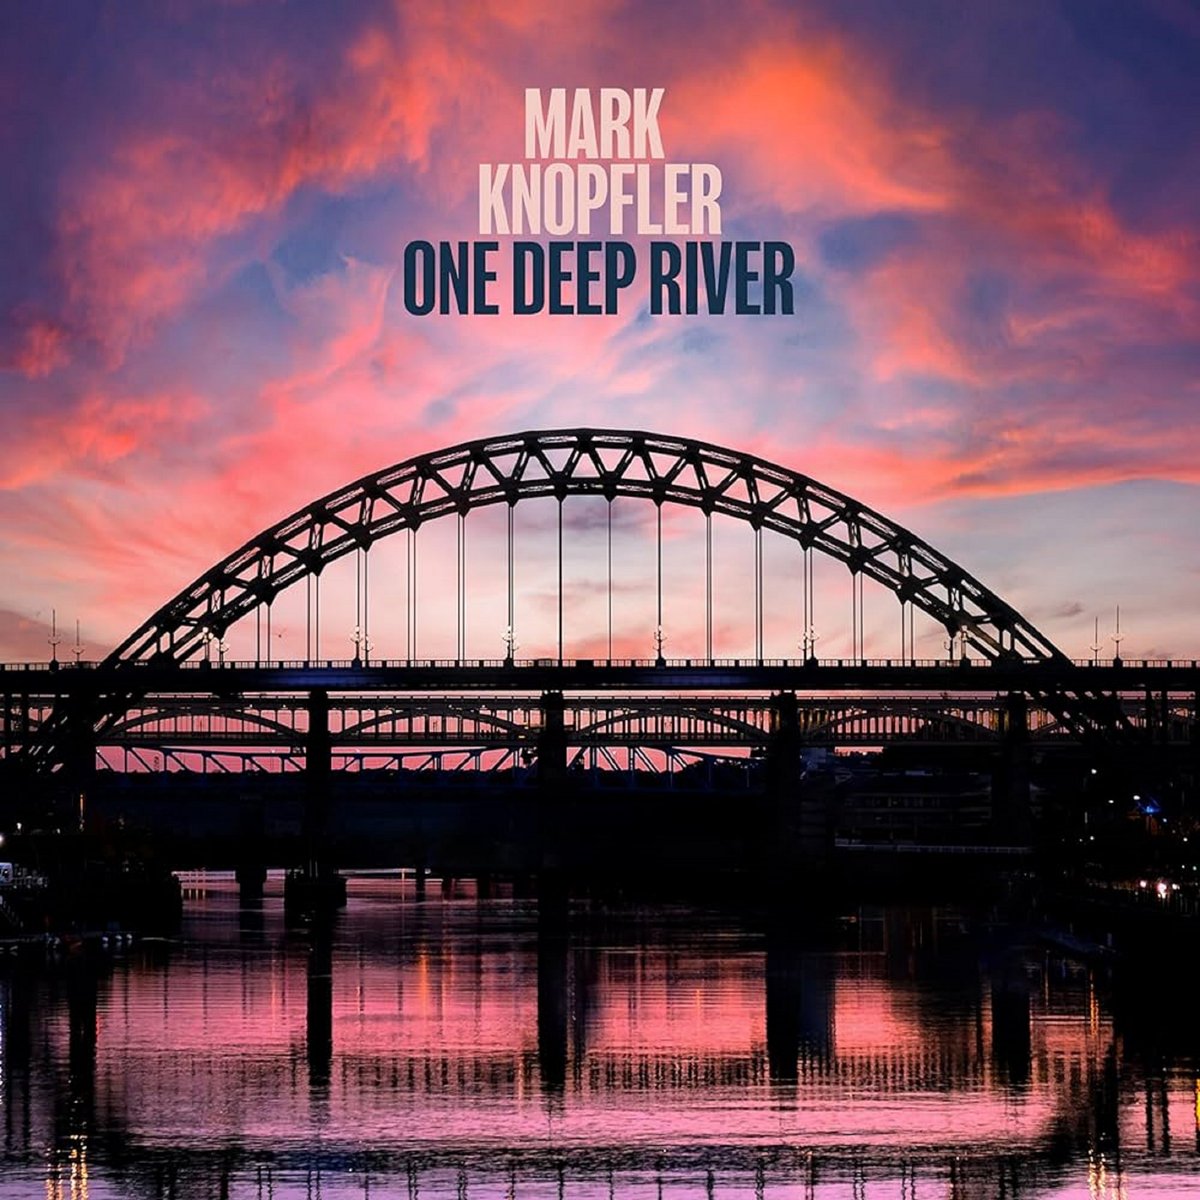 @MarkKnopfler dans son dernier album, c'est comme un vieux chat qui sent que la fin de rapproche : le rythme devient plus lent, plus mélodieux, on en profite. C'est un régal ❤️ #OneDeepRiver #MarkKnopfler